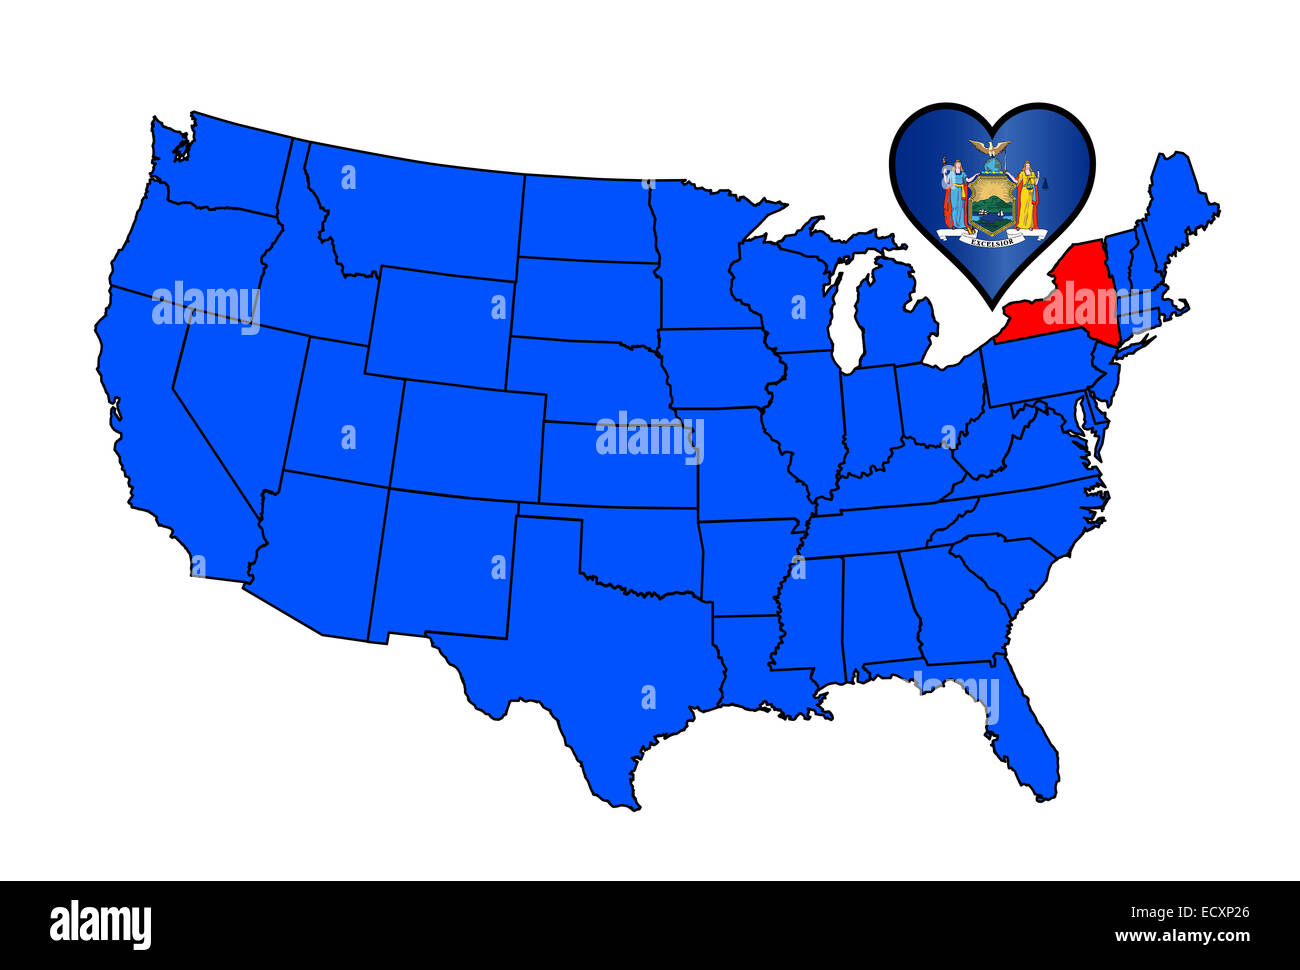 Il diametro esterno della mappa degli Stati Uniti d'America con lo stato di New York highlied in rosso con un cuore a forma di bandiera di stato. Foto Stock